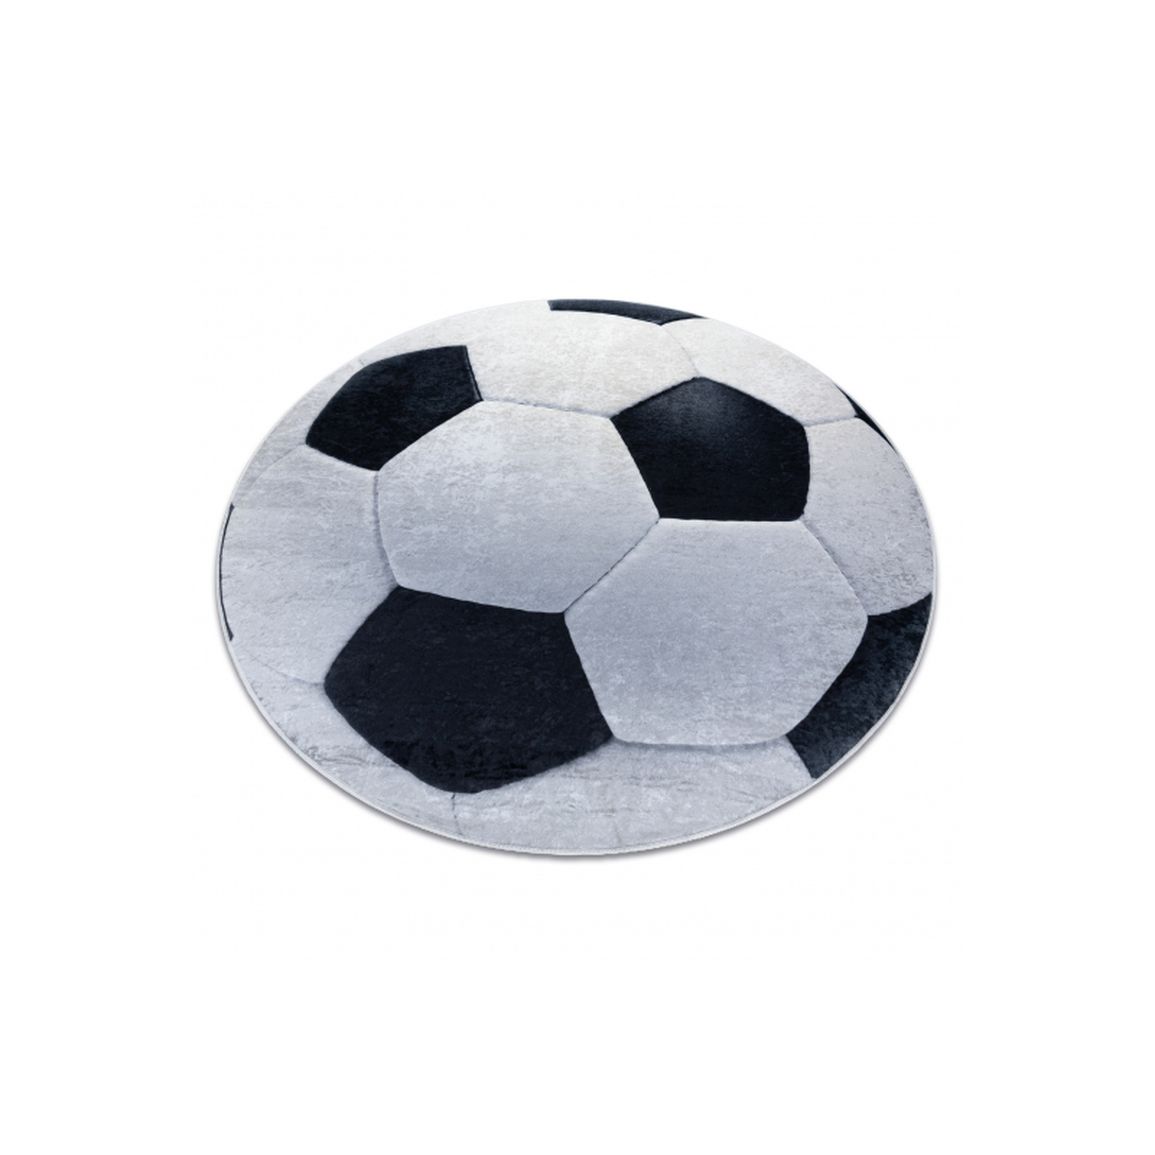 BAMBINO 2139 prateľný okrúhly koberec, Futbal, čierno/biely